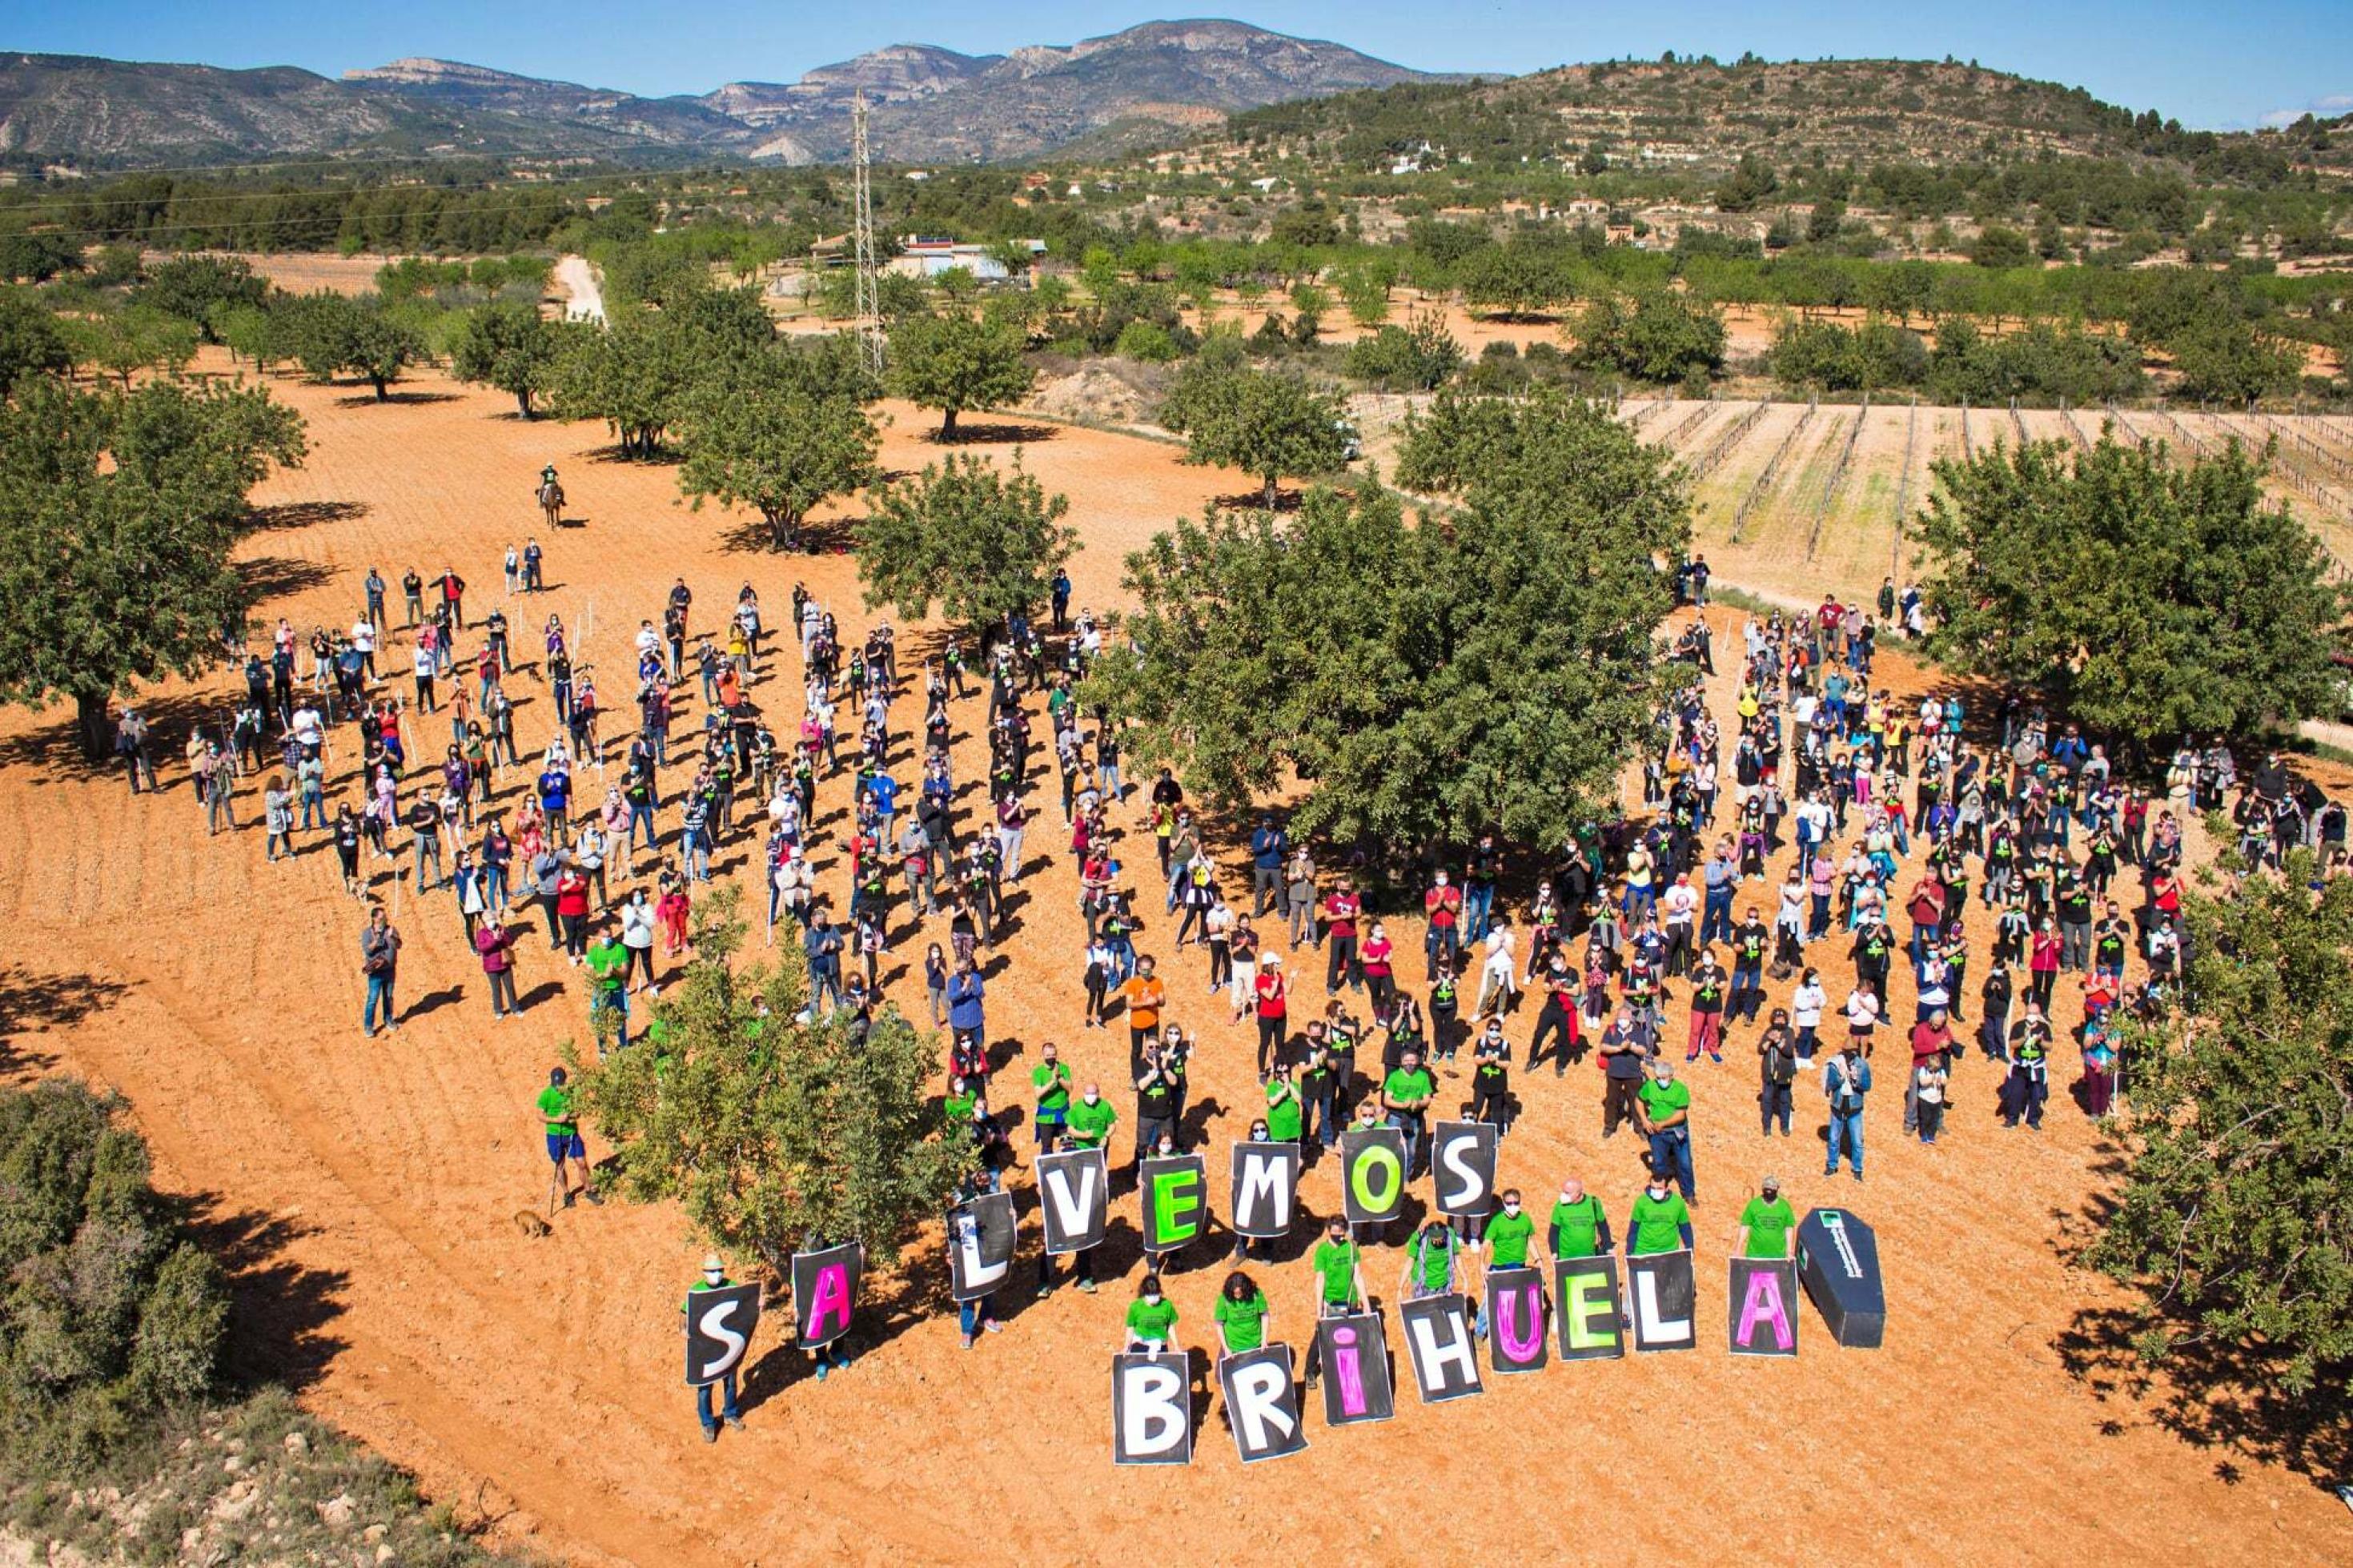 Die Aktivistïnnen haben sich in Corona-verträglichen Abständen aufgestellt; sie tragen ein Transparent mit der Aufschrift "Salvemos Brihuela" - lasst uns Brihuela retten